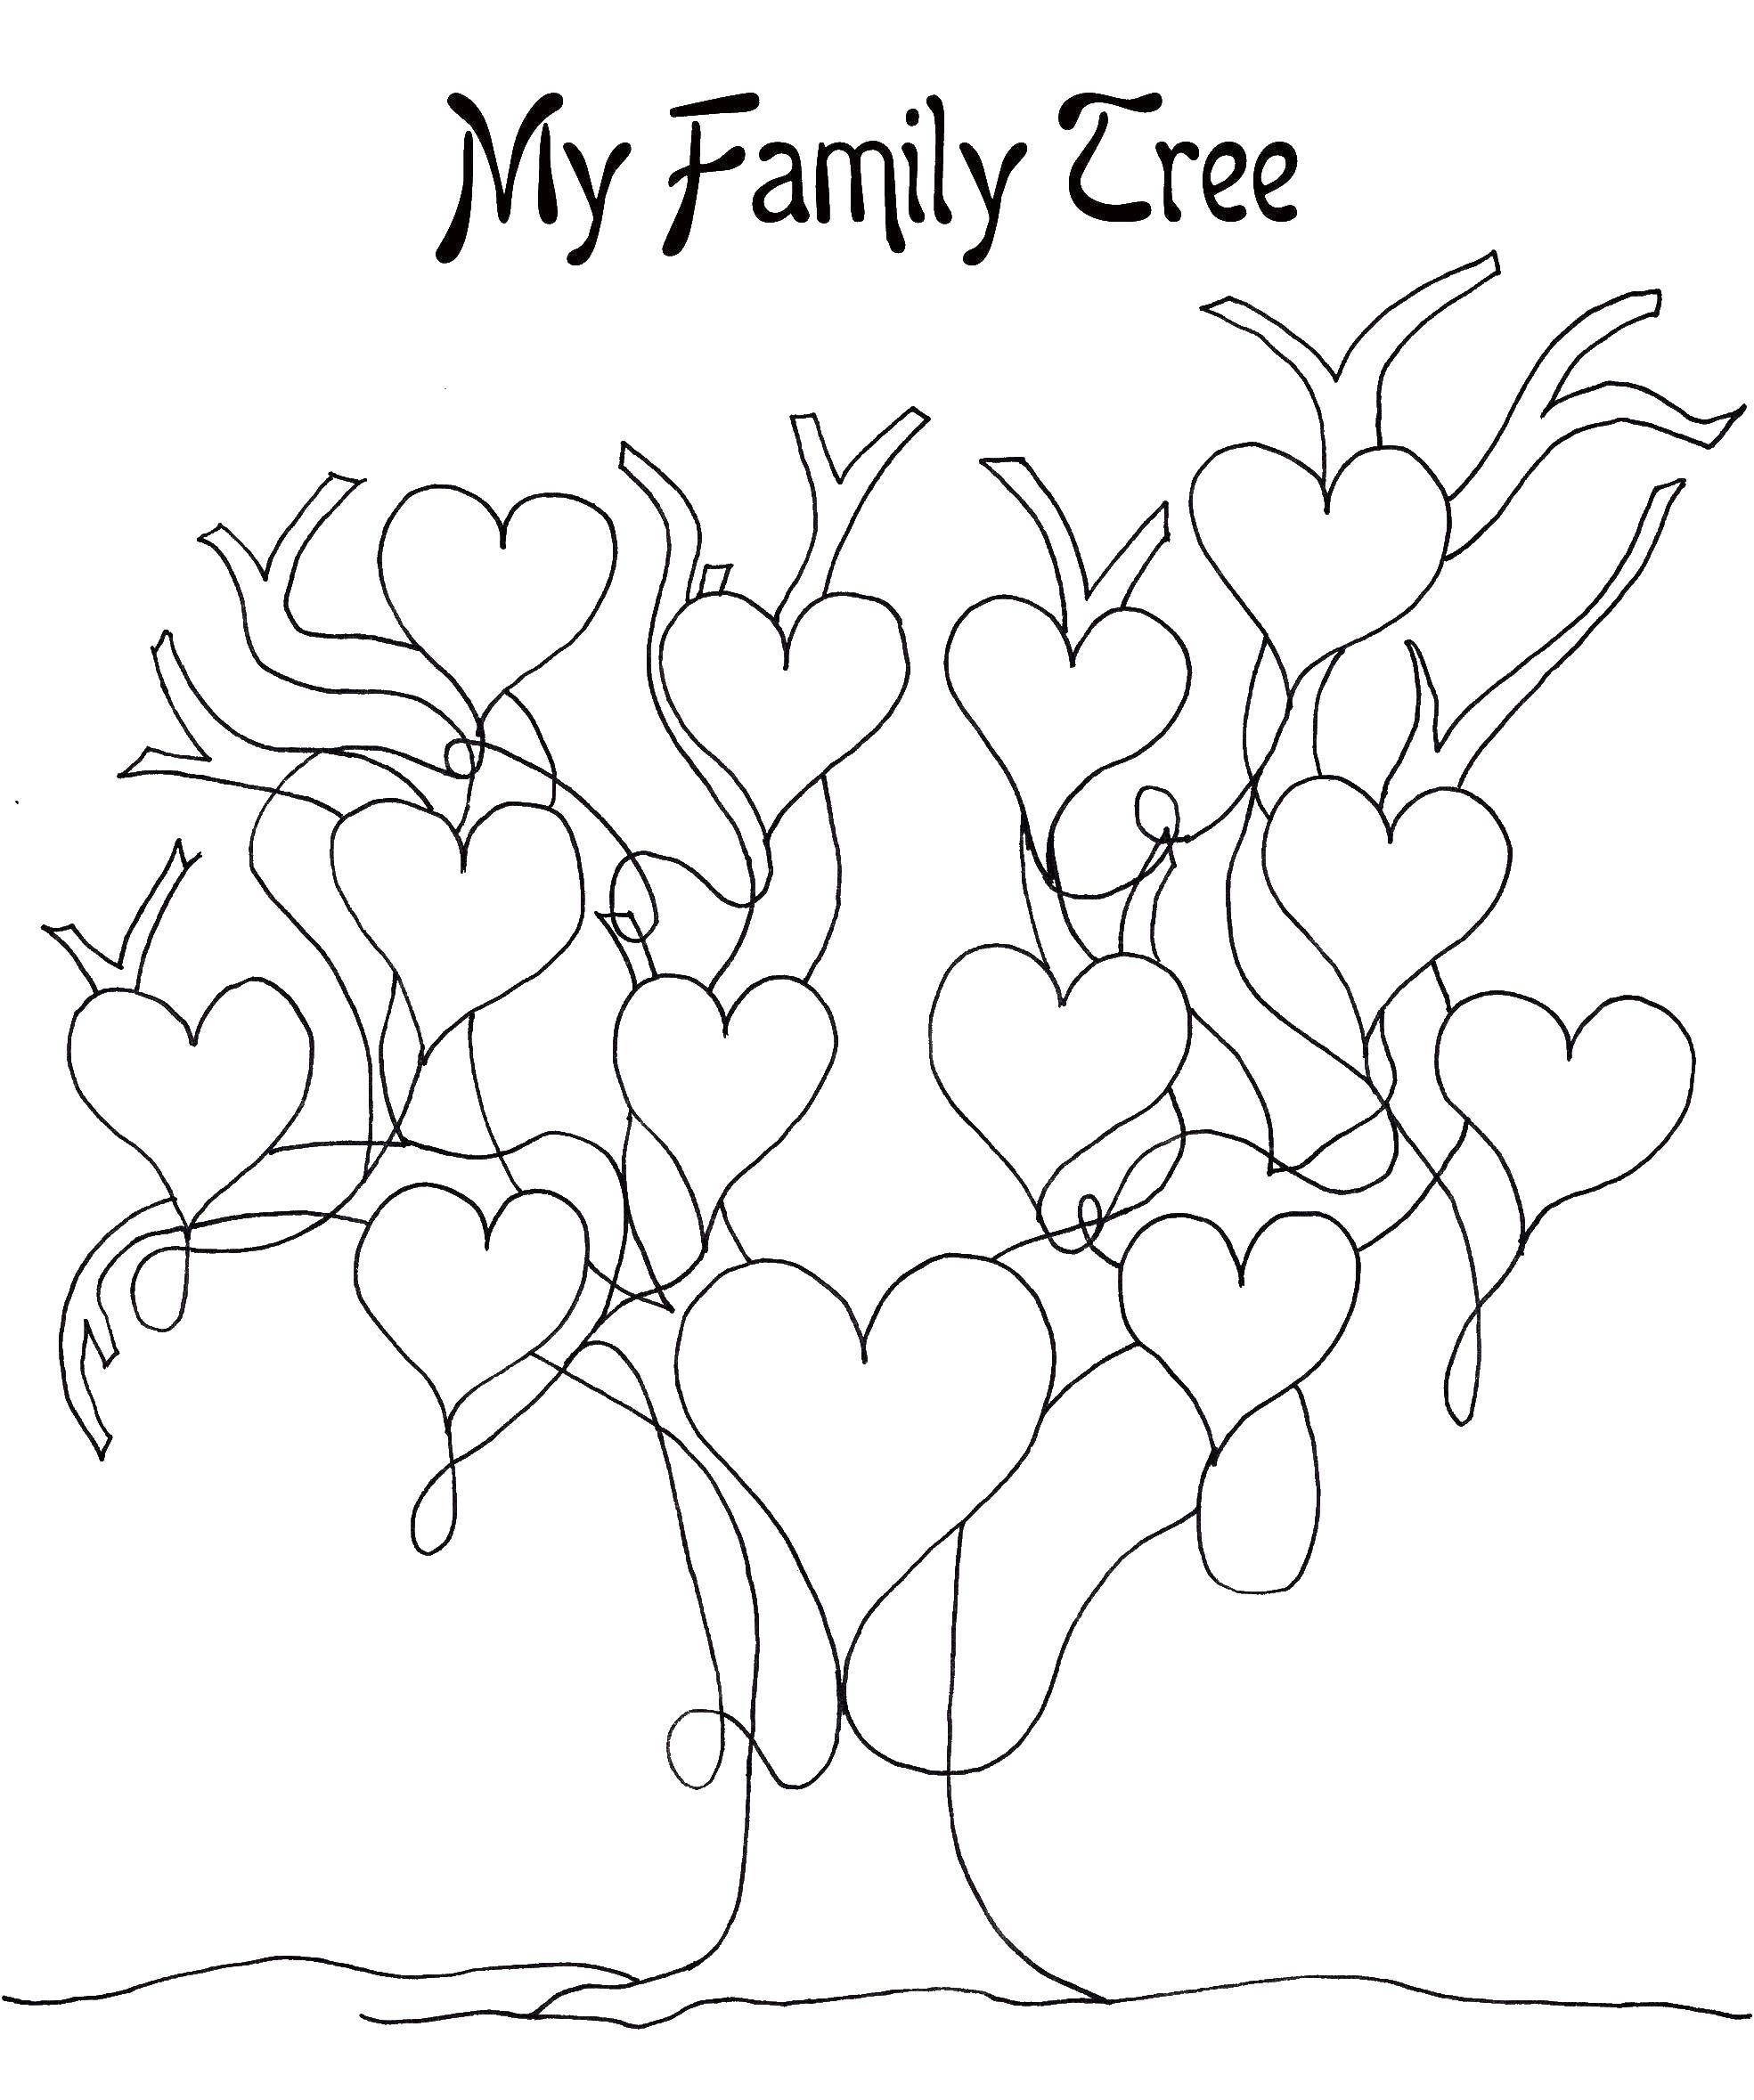 Coloring Family tree. Category Family tree. Tags:  family tree, hearts.